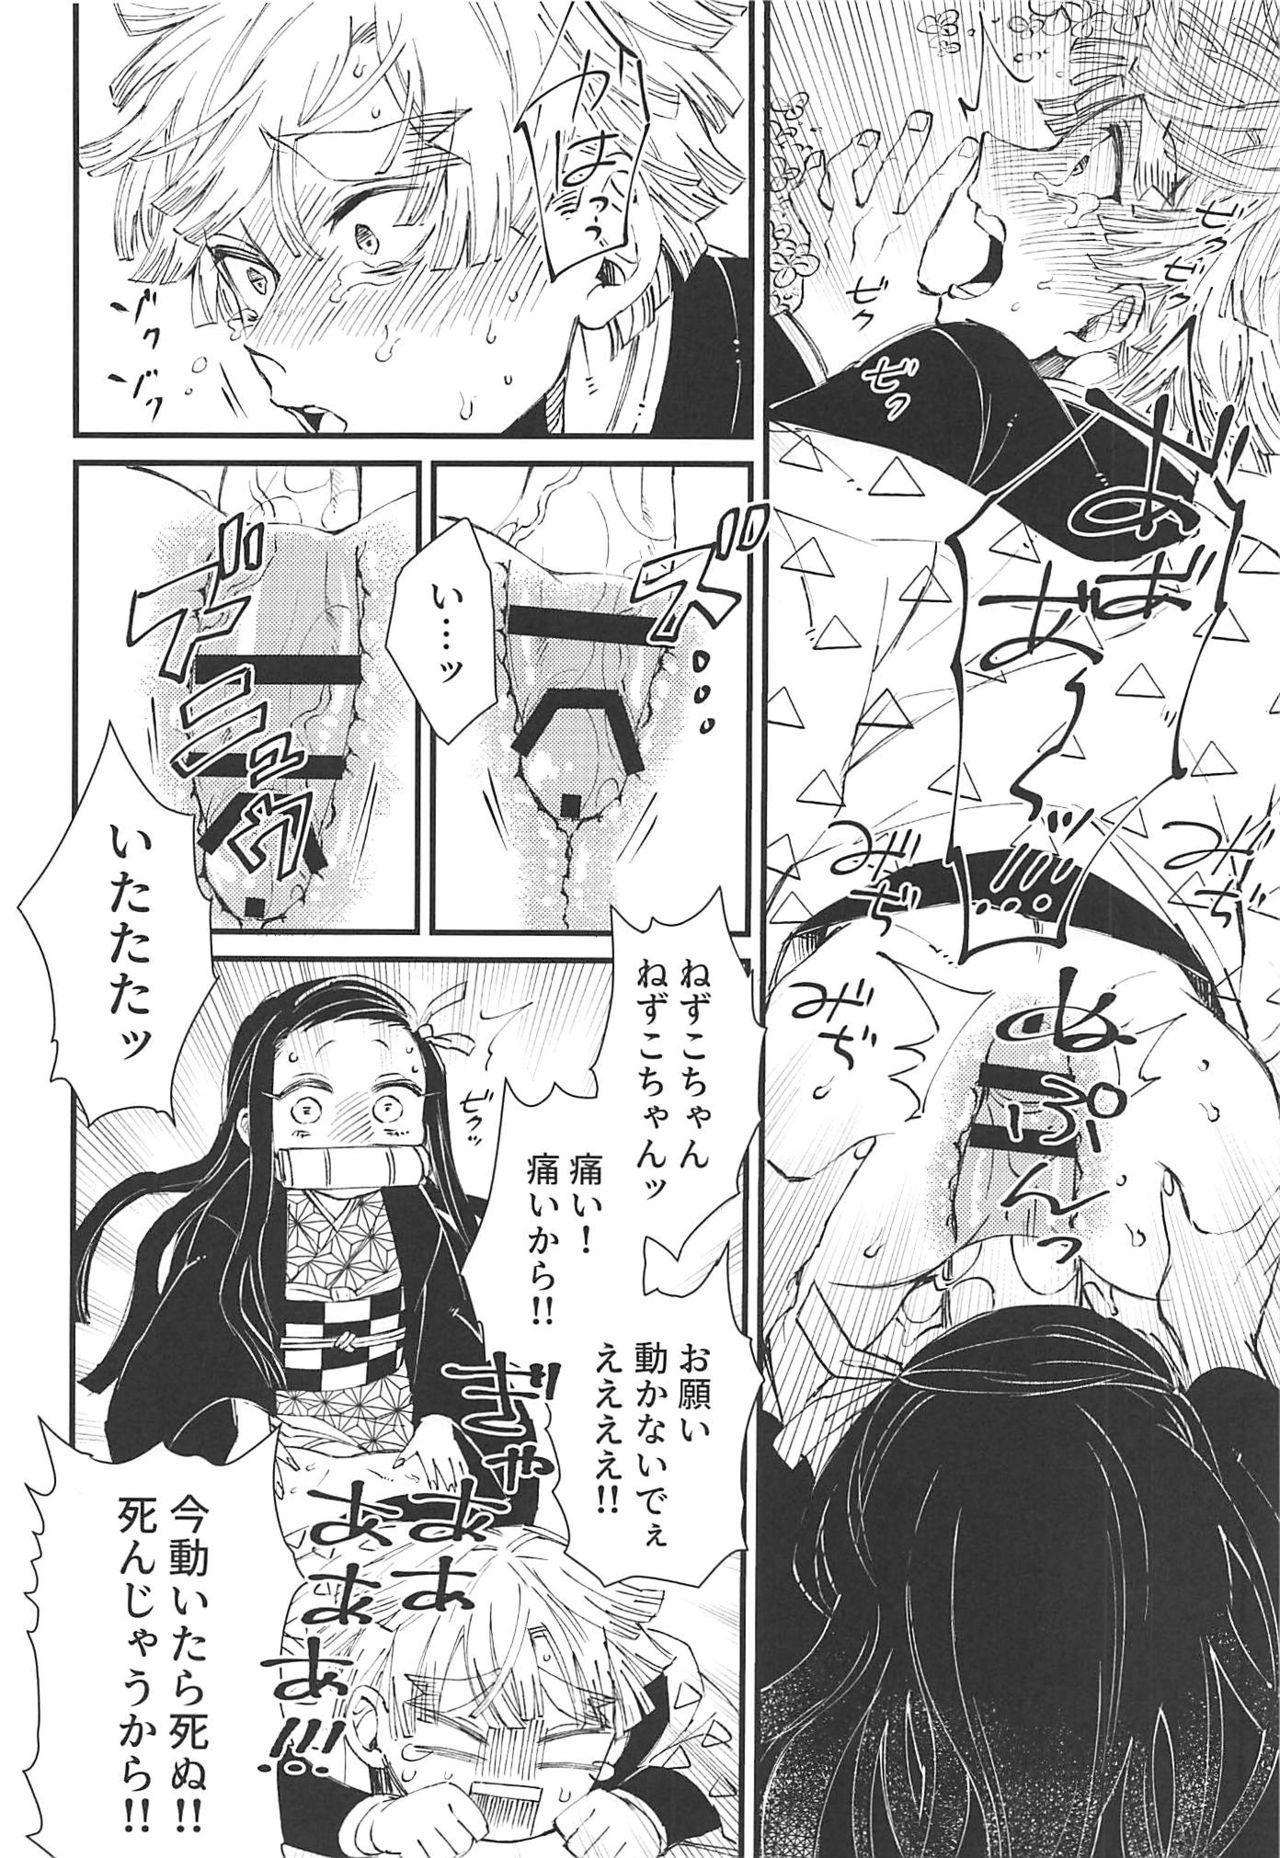 Bisex Onimara - Kimetsu no yaiba Story - Page 7